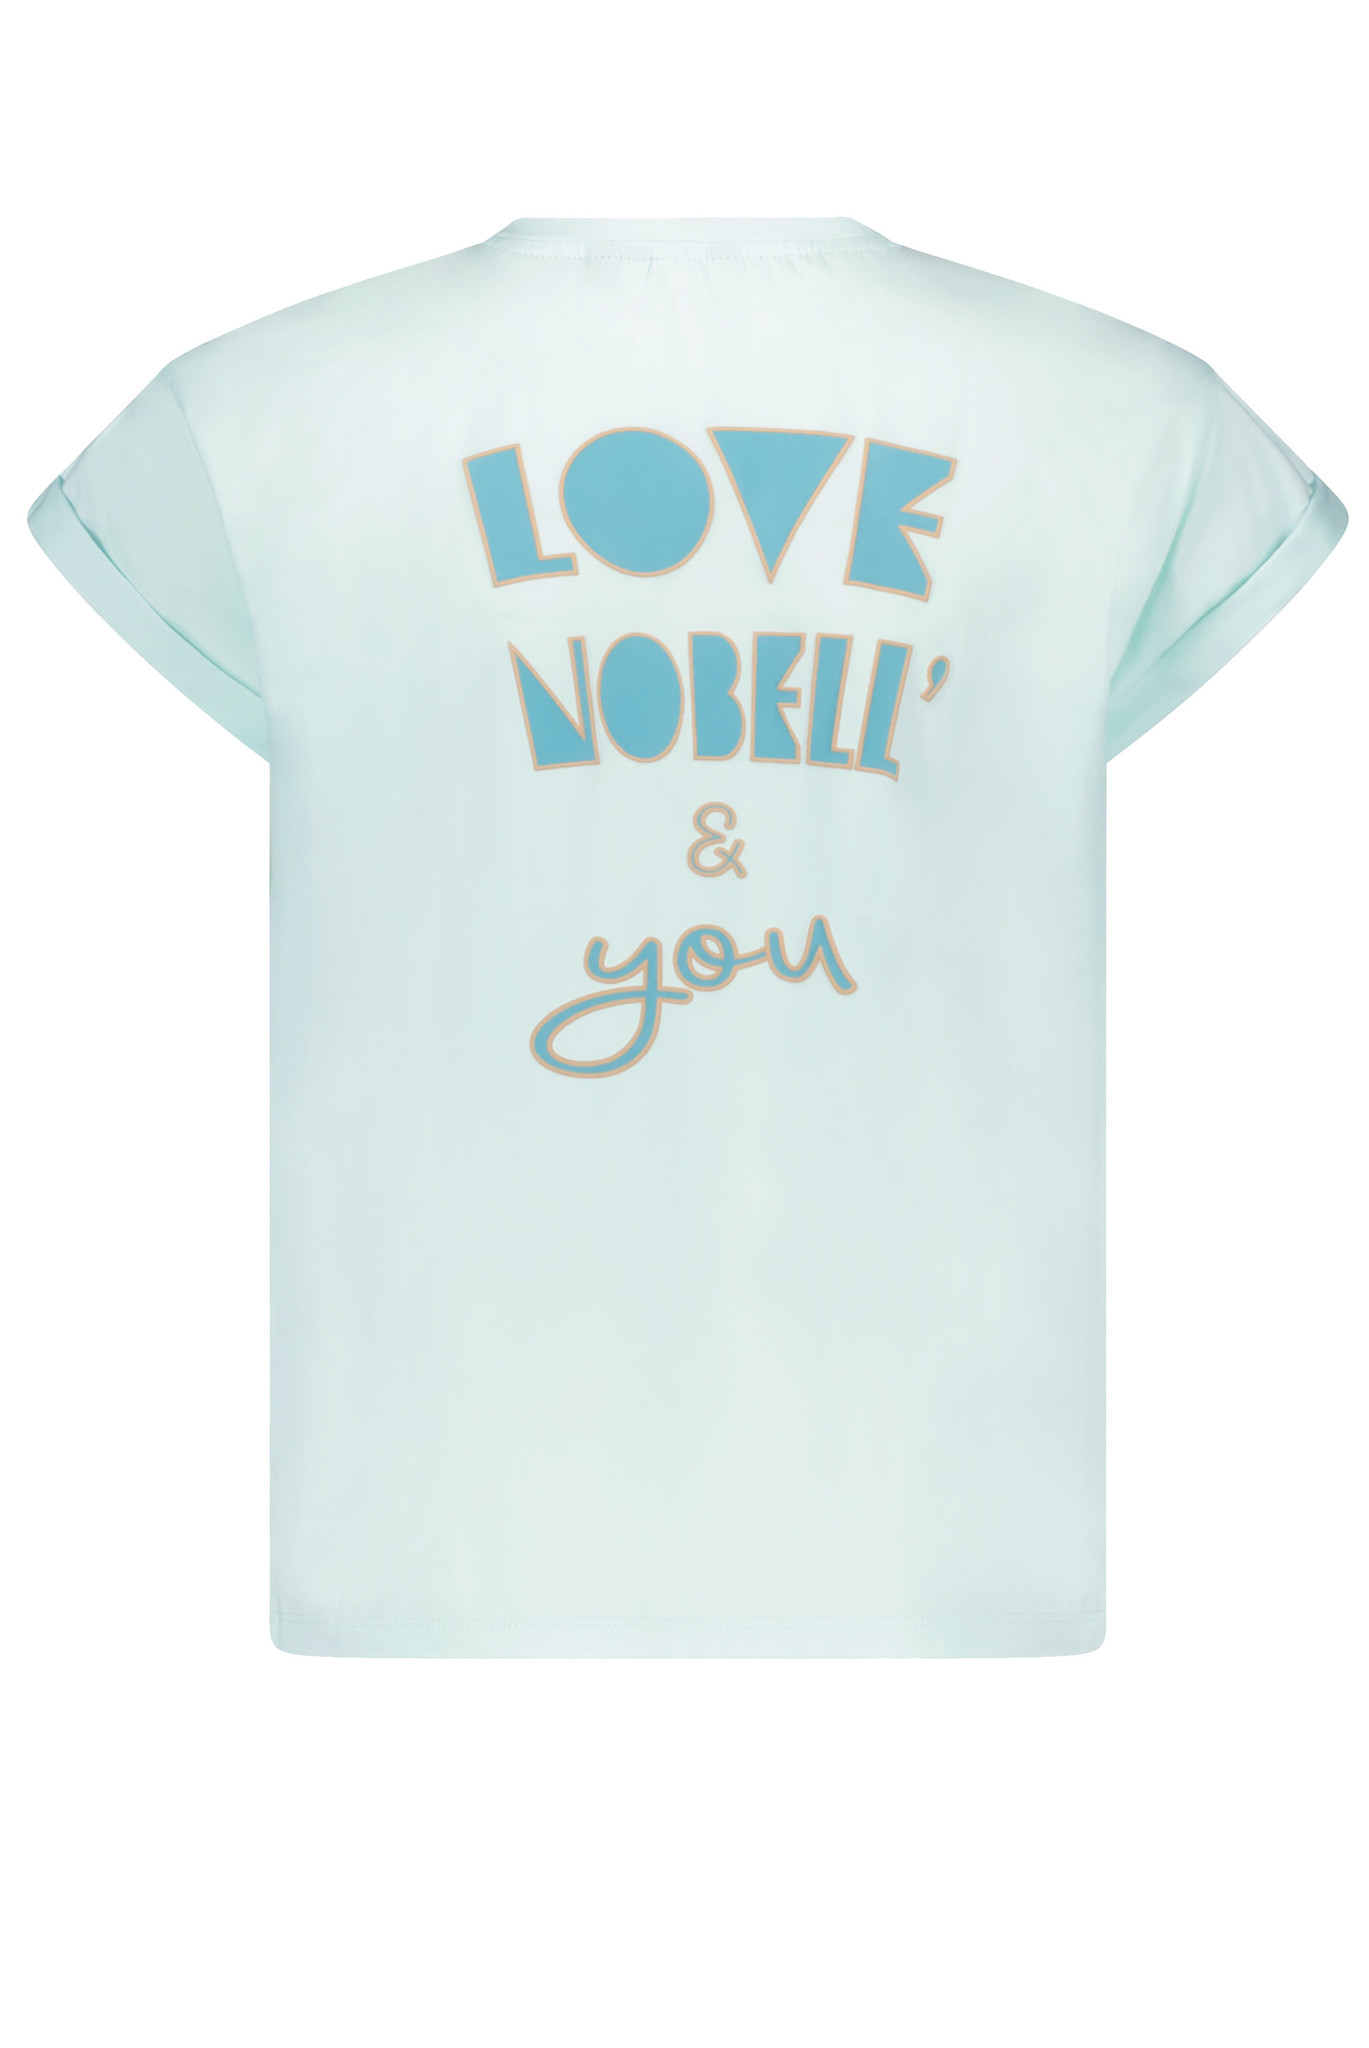 Nobell Shirt NoBell 3400-141 spa blue